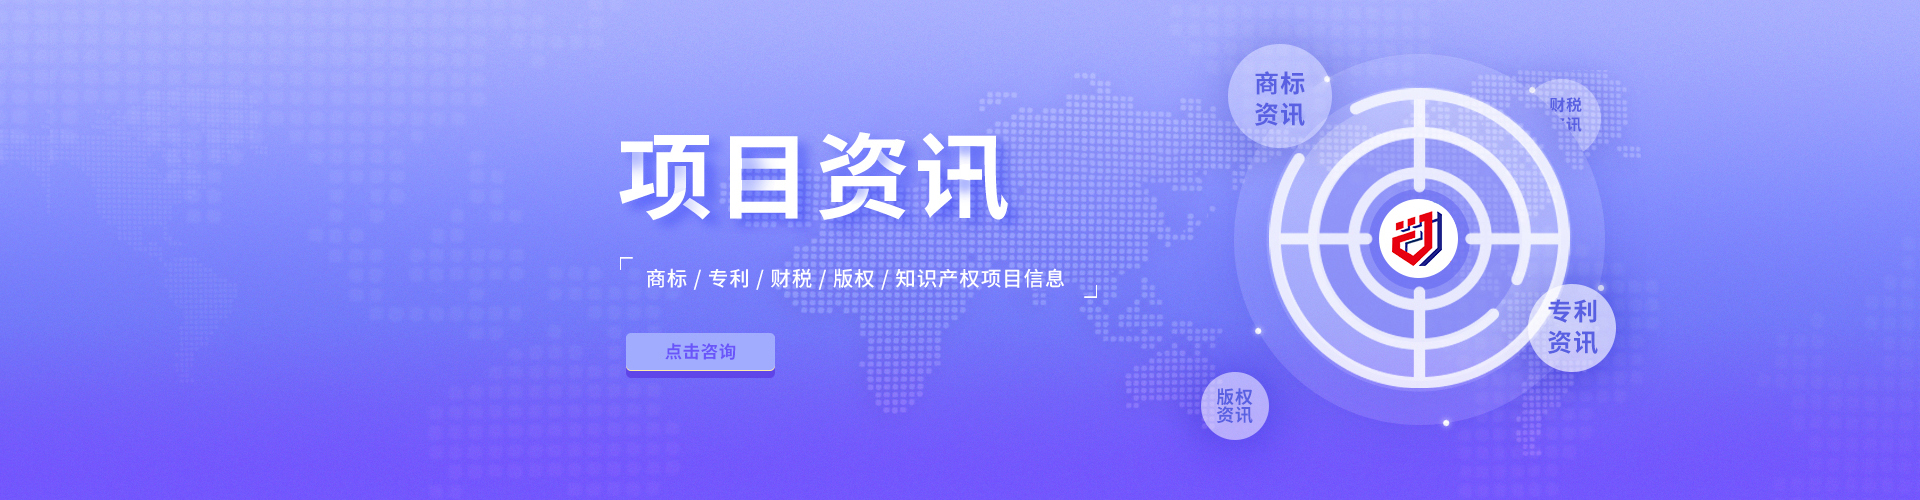 南京举办2019年智能制造产业知识产权培训班